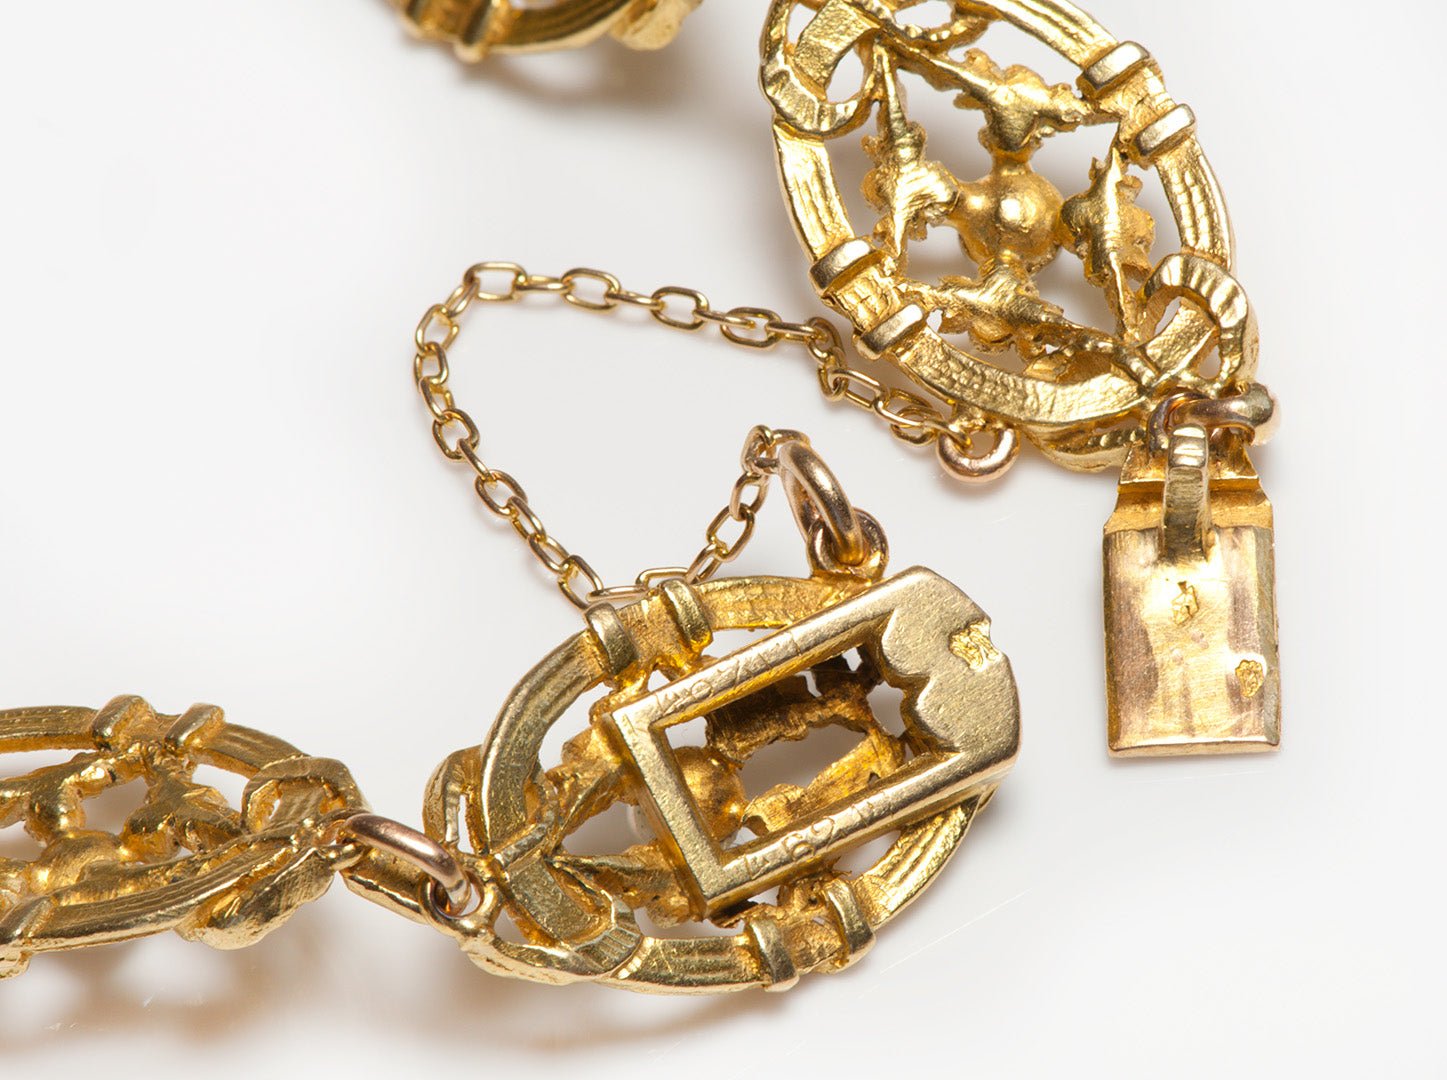 Art Nouveau French Gold Pearl Bracelet